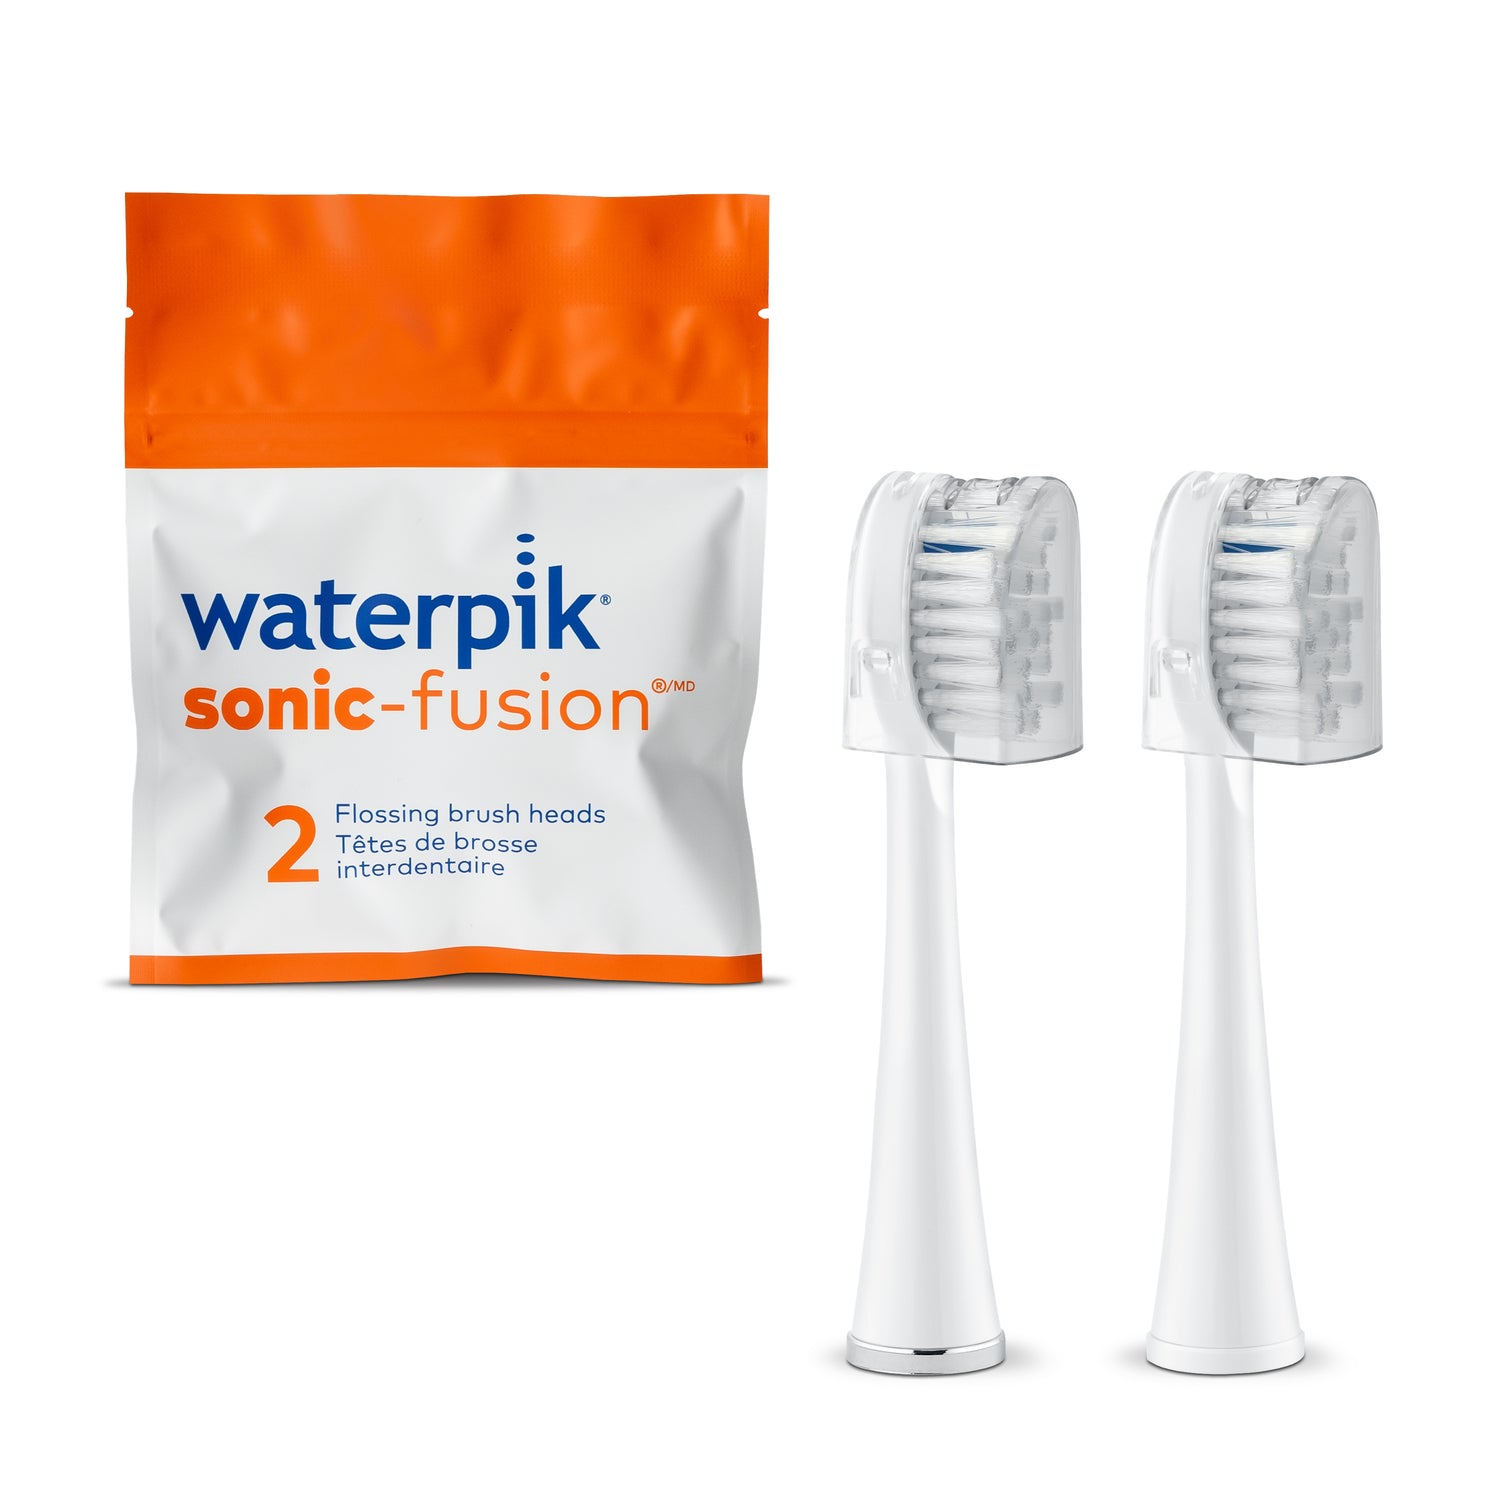 Waterpik Sonic-Fusion replacement brush heads